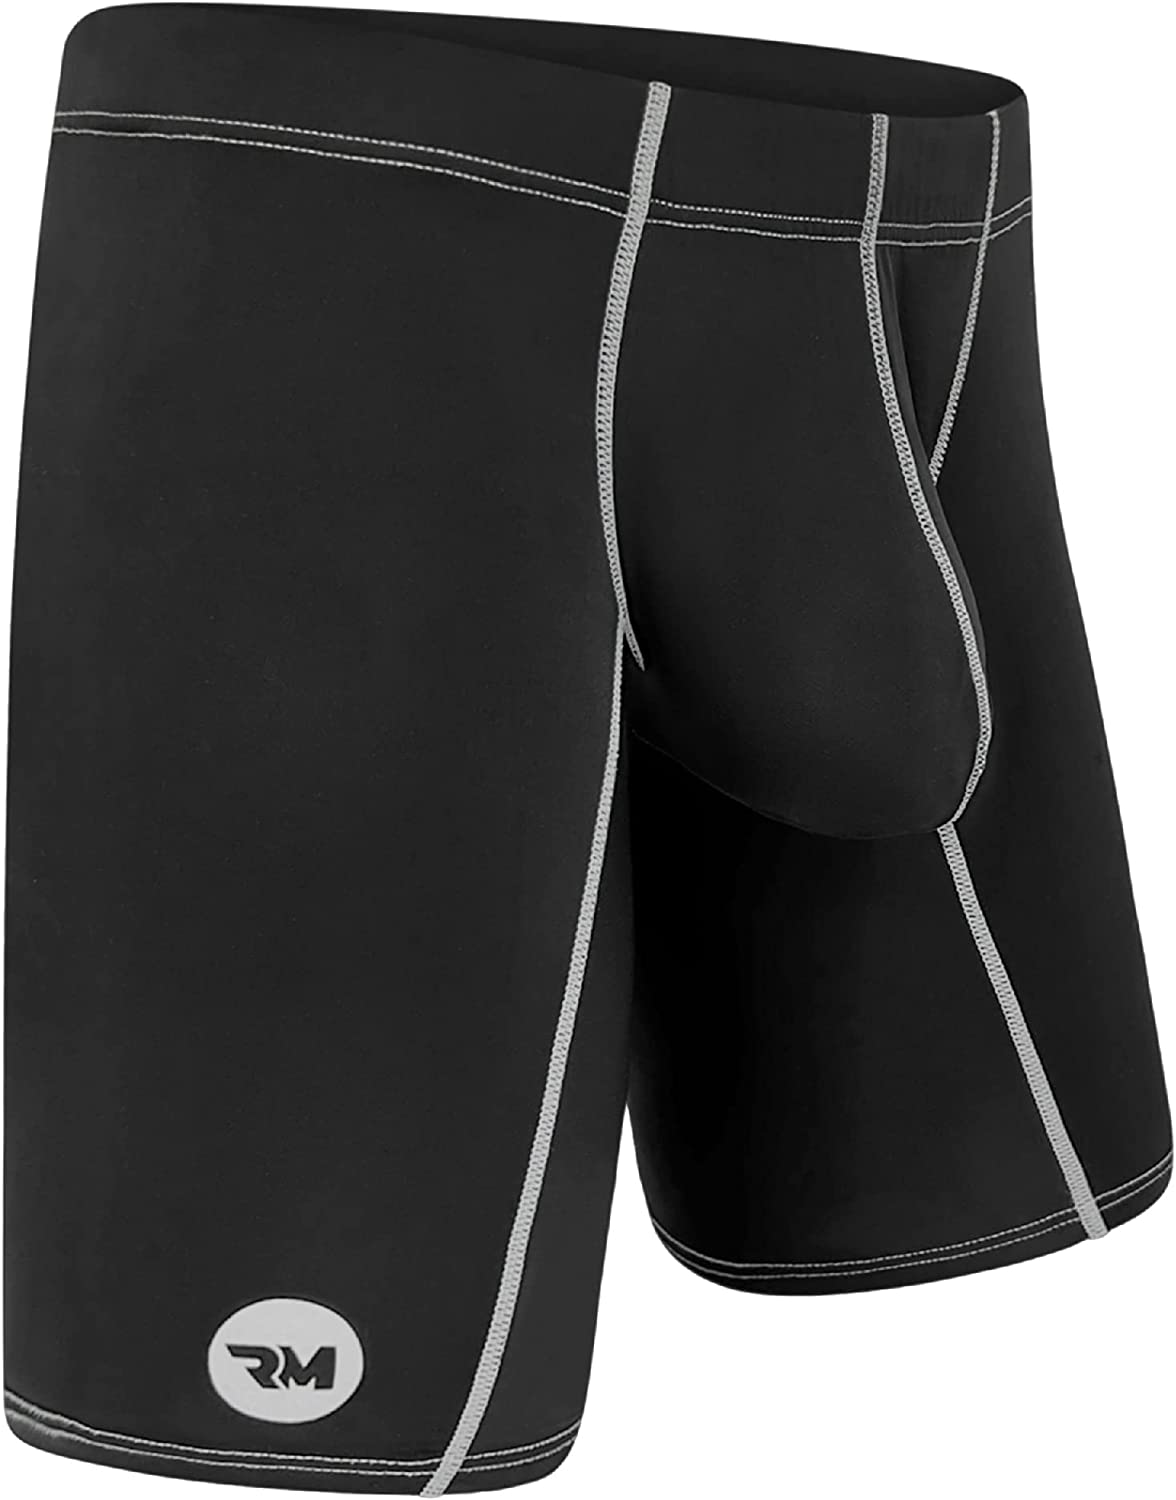 CoolMen Ice Silk Underwear (Combo 4 Pack) –